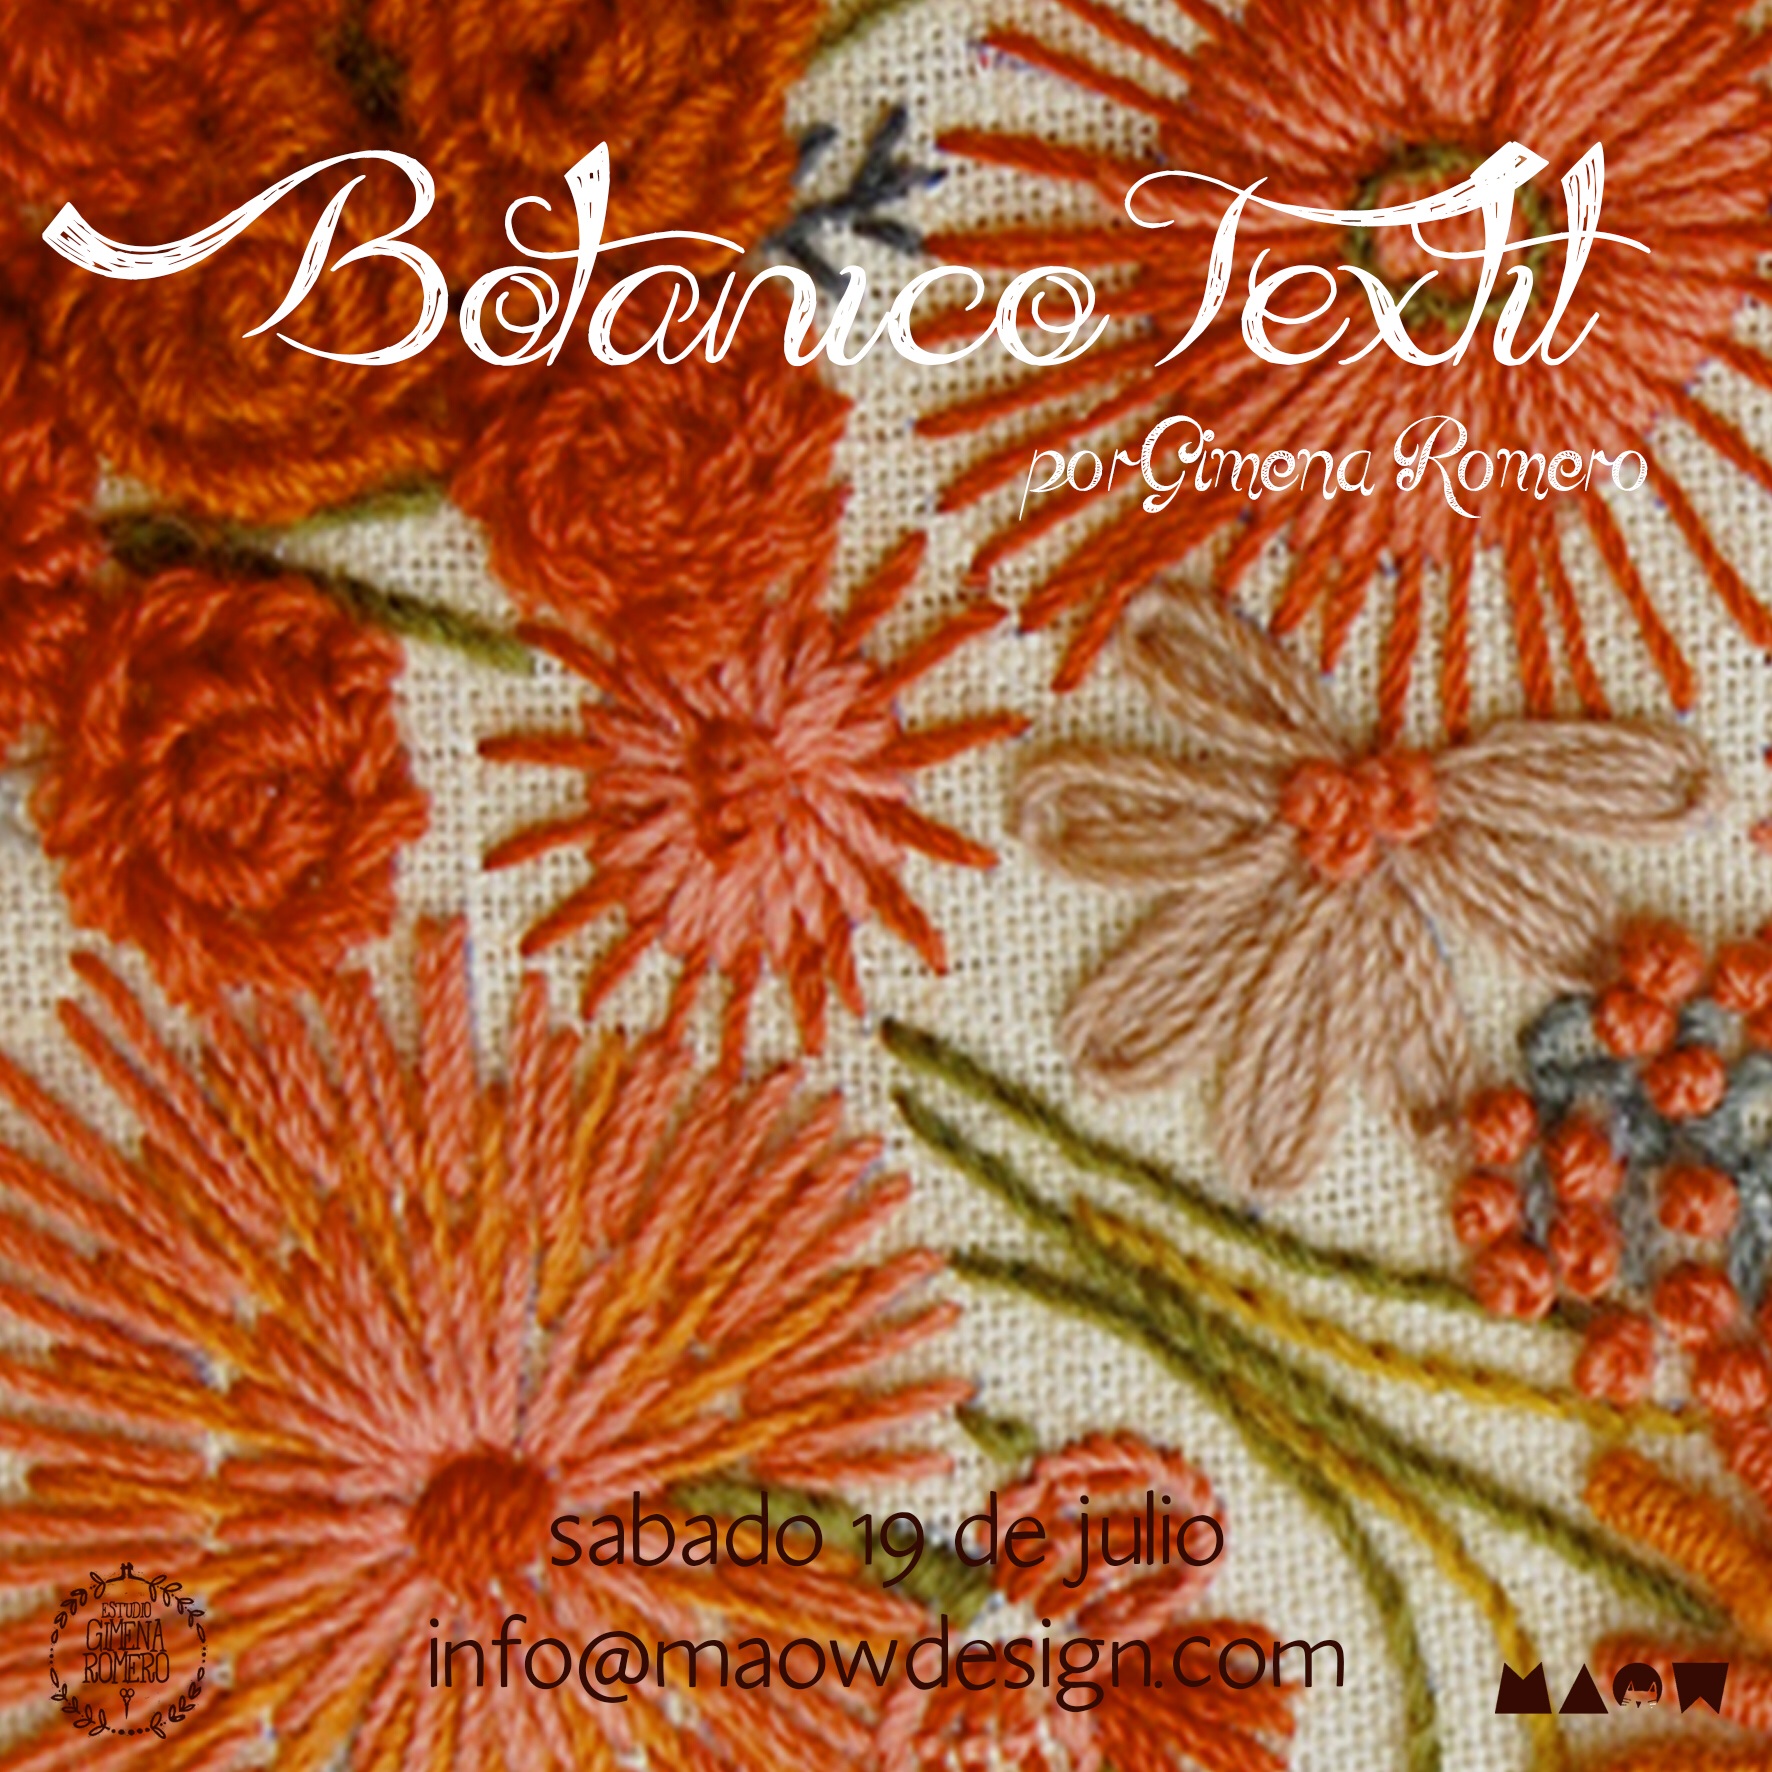 Botánico textil maowdesign